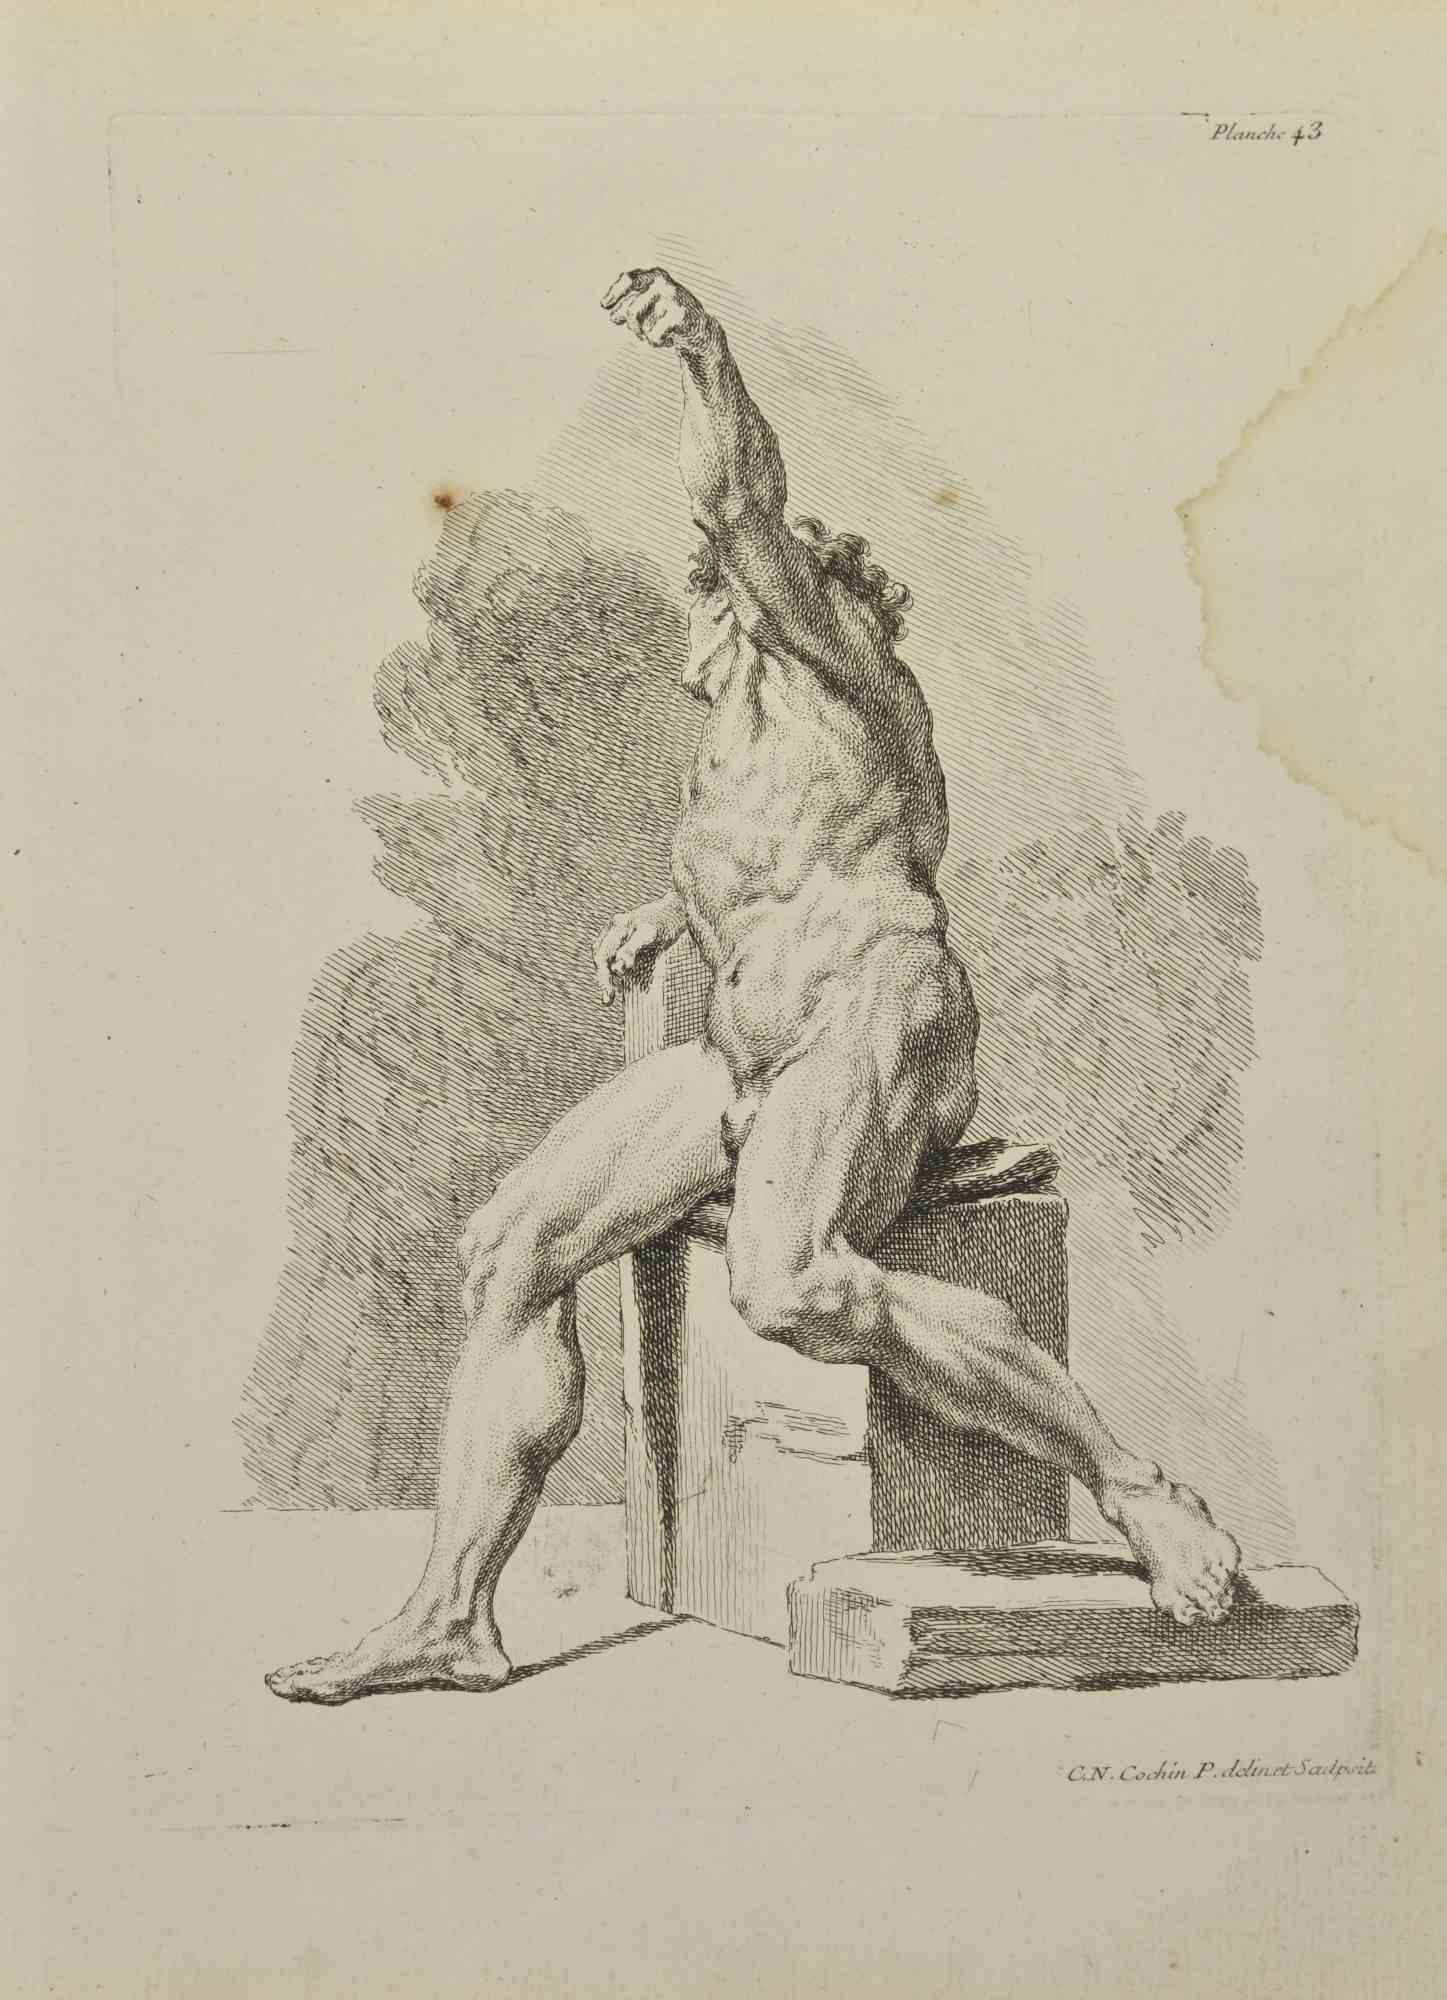 Anatomie-Studien ist eine Radierung von Nicholas Cochin aus dem Jahr 1755.

Guter Zustand mit Stockflecken und Falten.

In der Platte signiert.

Das Kunstwerk wird mit sicheren Strichen dargestellt.

Die Radierung wurde für die Anatomie-Studie